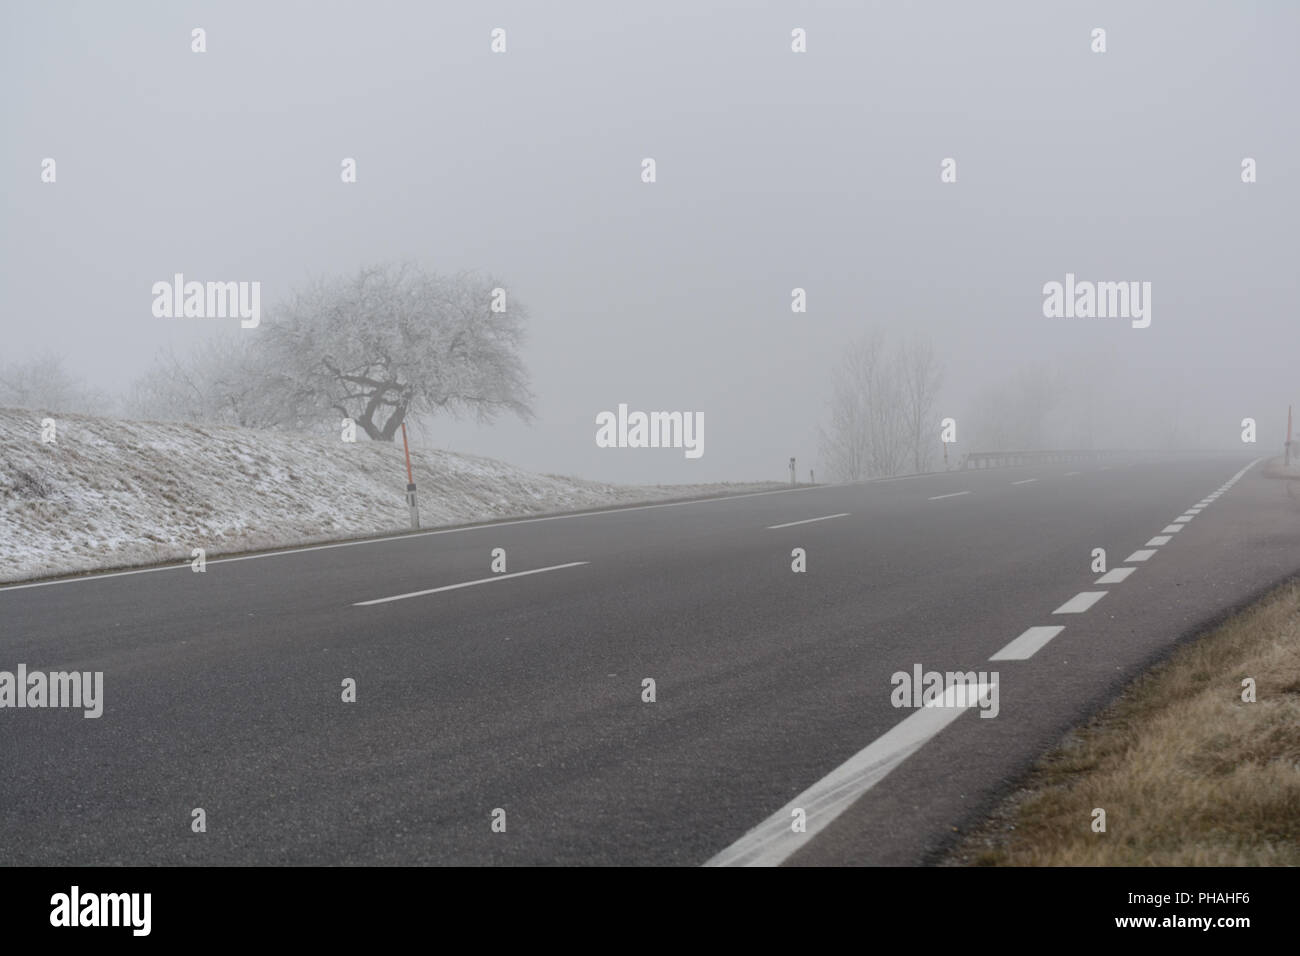 La guida pericolosa condizioni a causa della scarsa visibilità nella nebbia Foto Stock